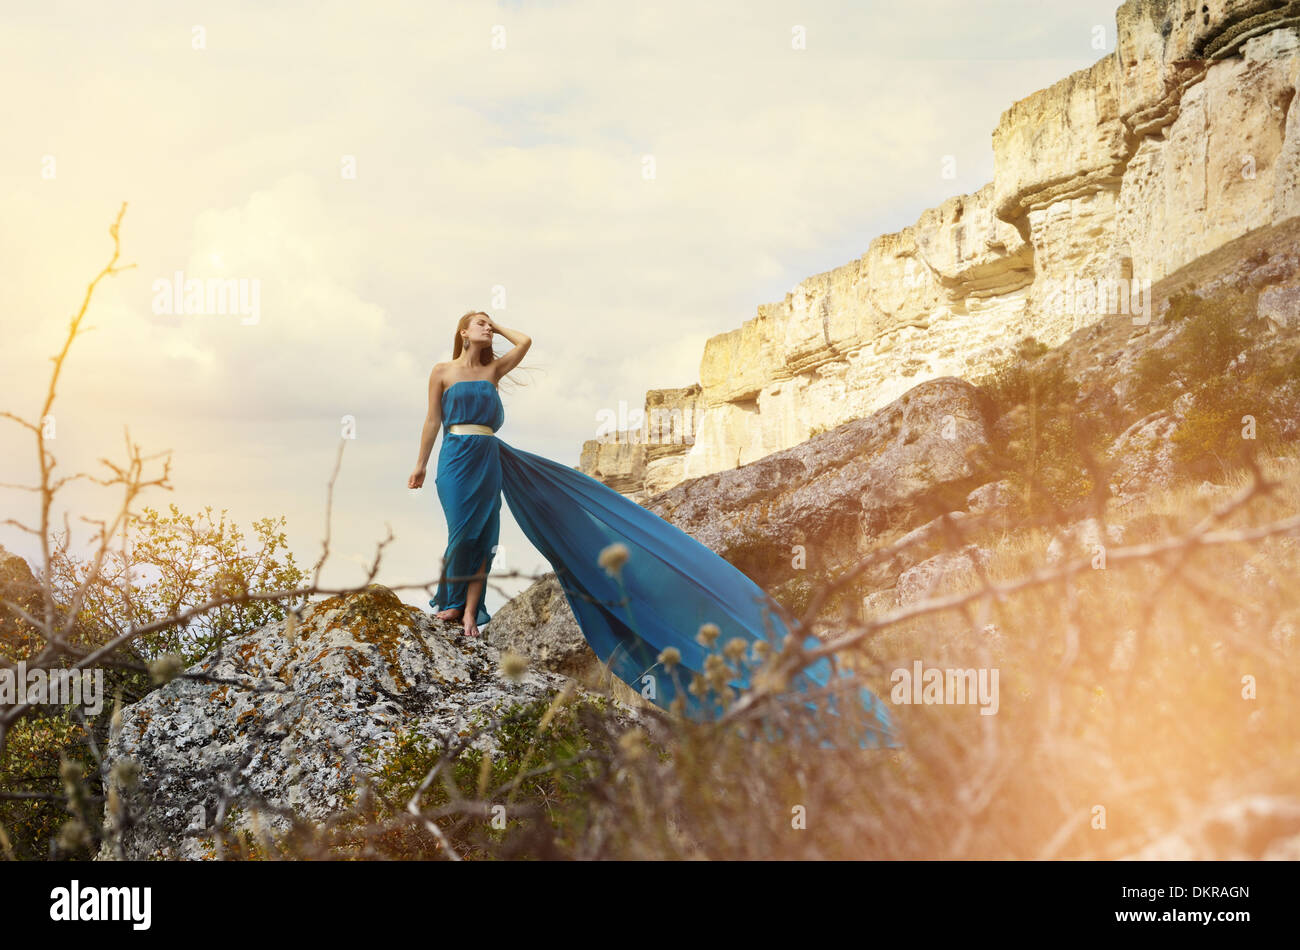 Junge schöne allein Frau im dunklen blaugrünen Kleid steht auf dem Felsen mit Bergen im Hintergrund Stockfoto